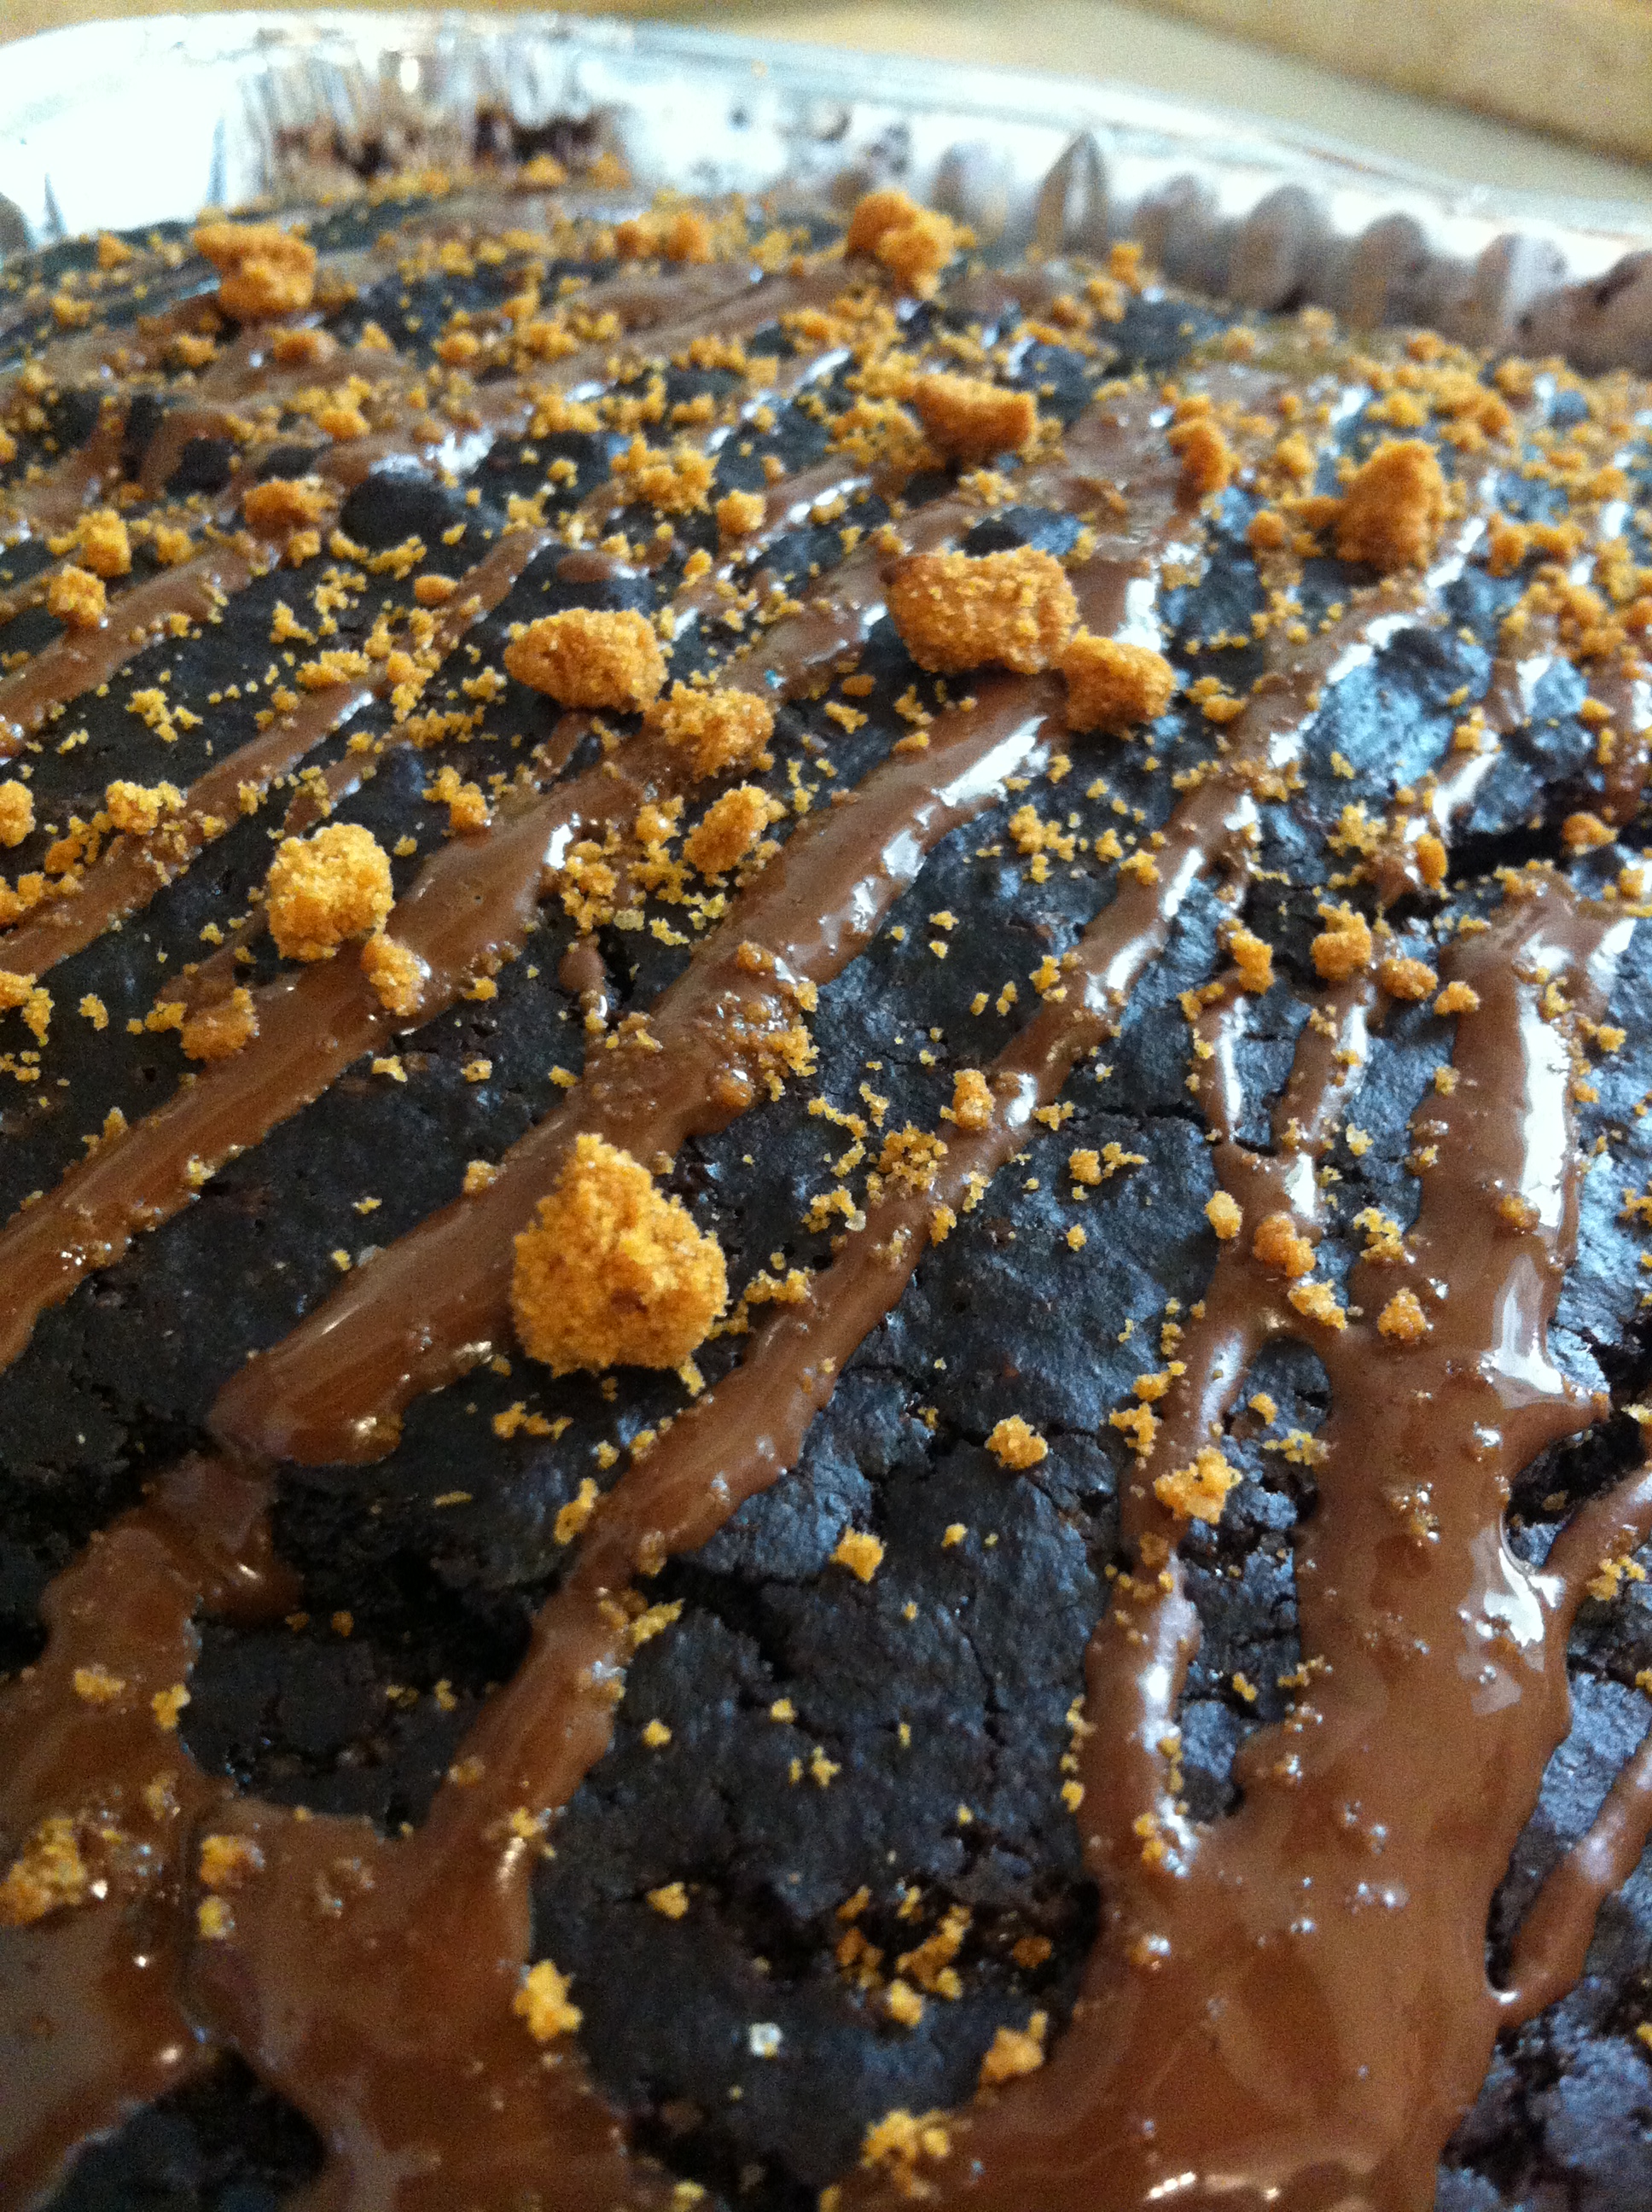 עוגת שוקולד אגדית עם קישוטי לוטוס וחמאת בוטנים 2 - מתכונים טבעוניים השוחטת הטבעונית יעלי שוחט